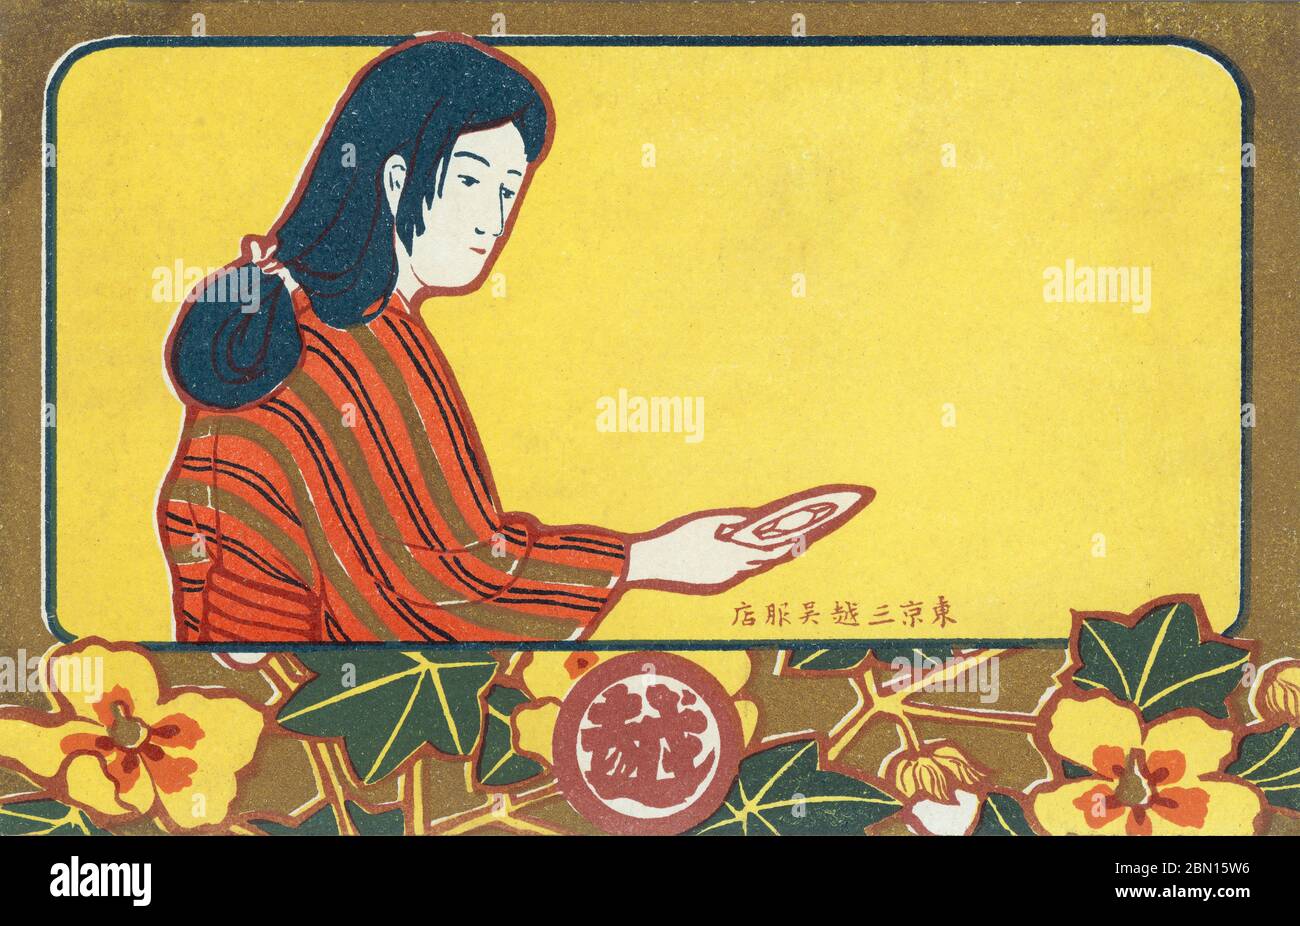 [ 1900er Japan - Mitsukoshi Werbung ] - Werbepostkarte für Mitsukoshi Kaufhaus mit einer Illustration einer Frau in Kimono. Japanischer Text: 東京三越呉服店 Vintage Postkarte des 20. Jahrhunderts. Stockfoto